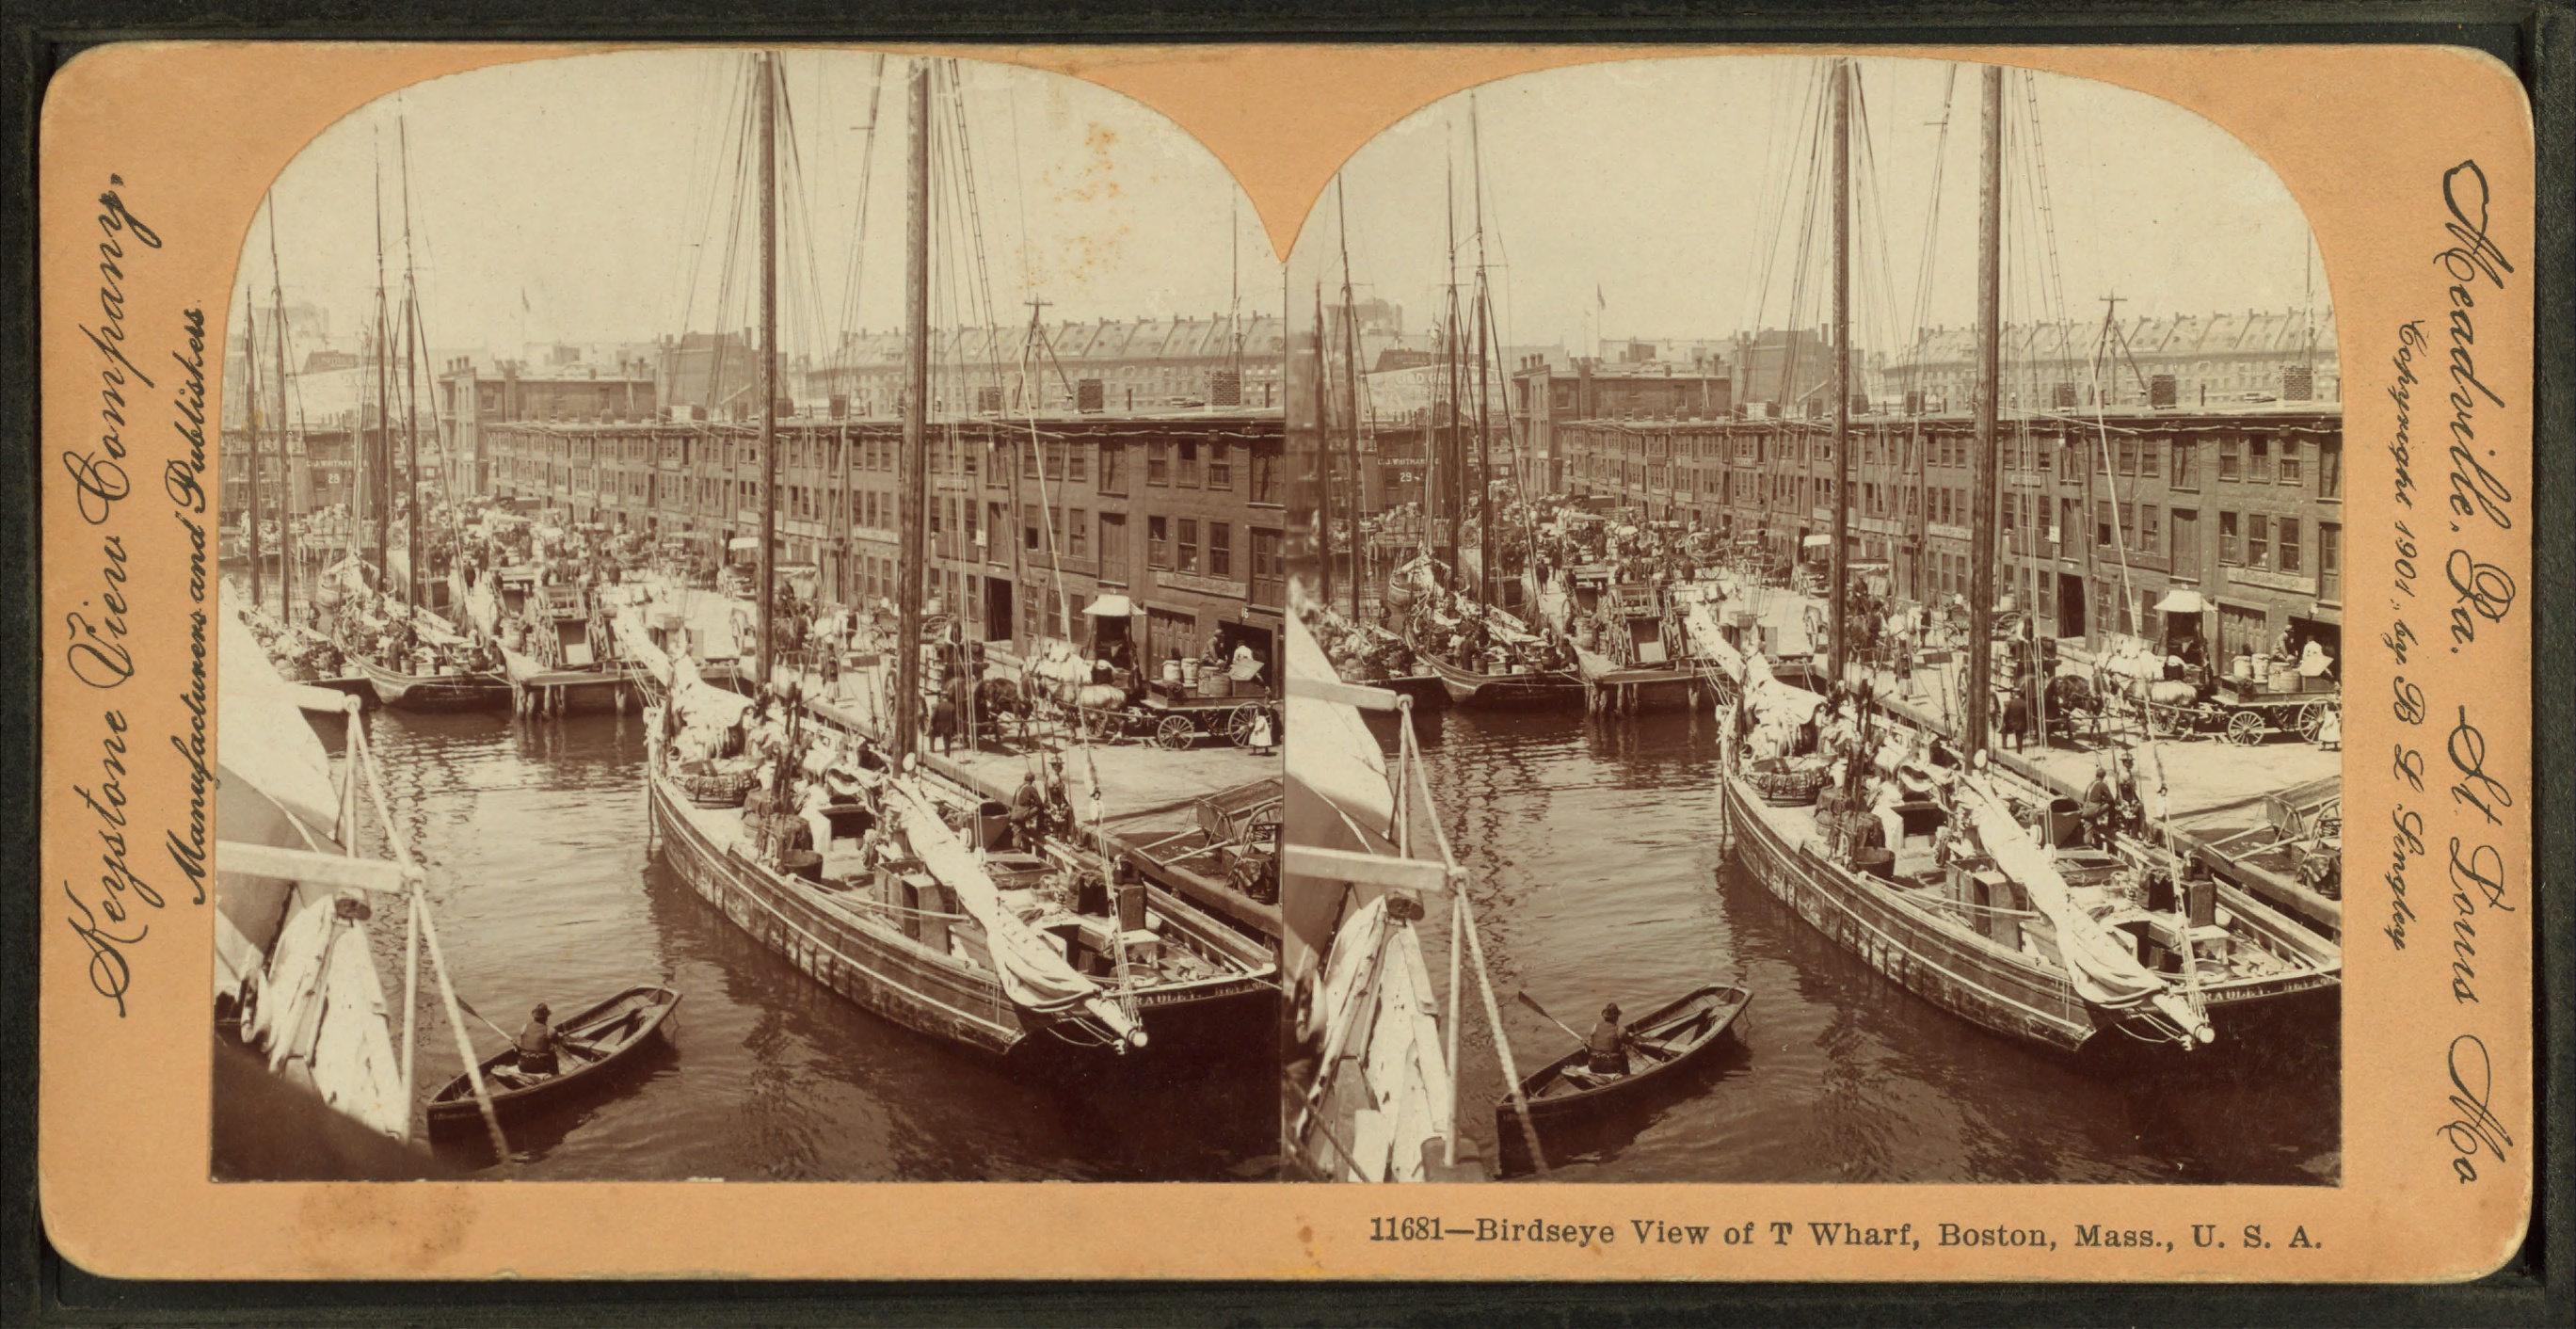 Birdseye view of T Wharf, Boston, Mass., U.S.A, by Keystone View Company 2